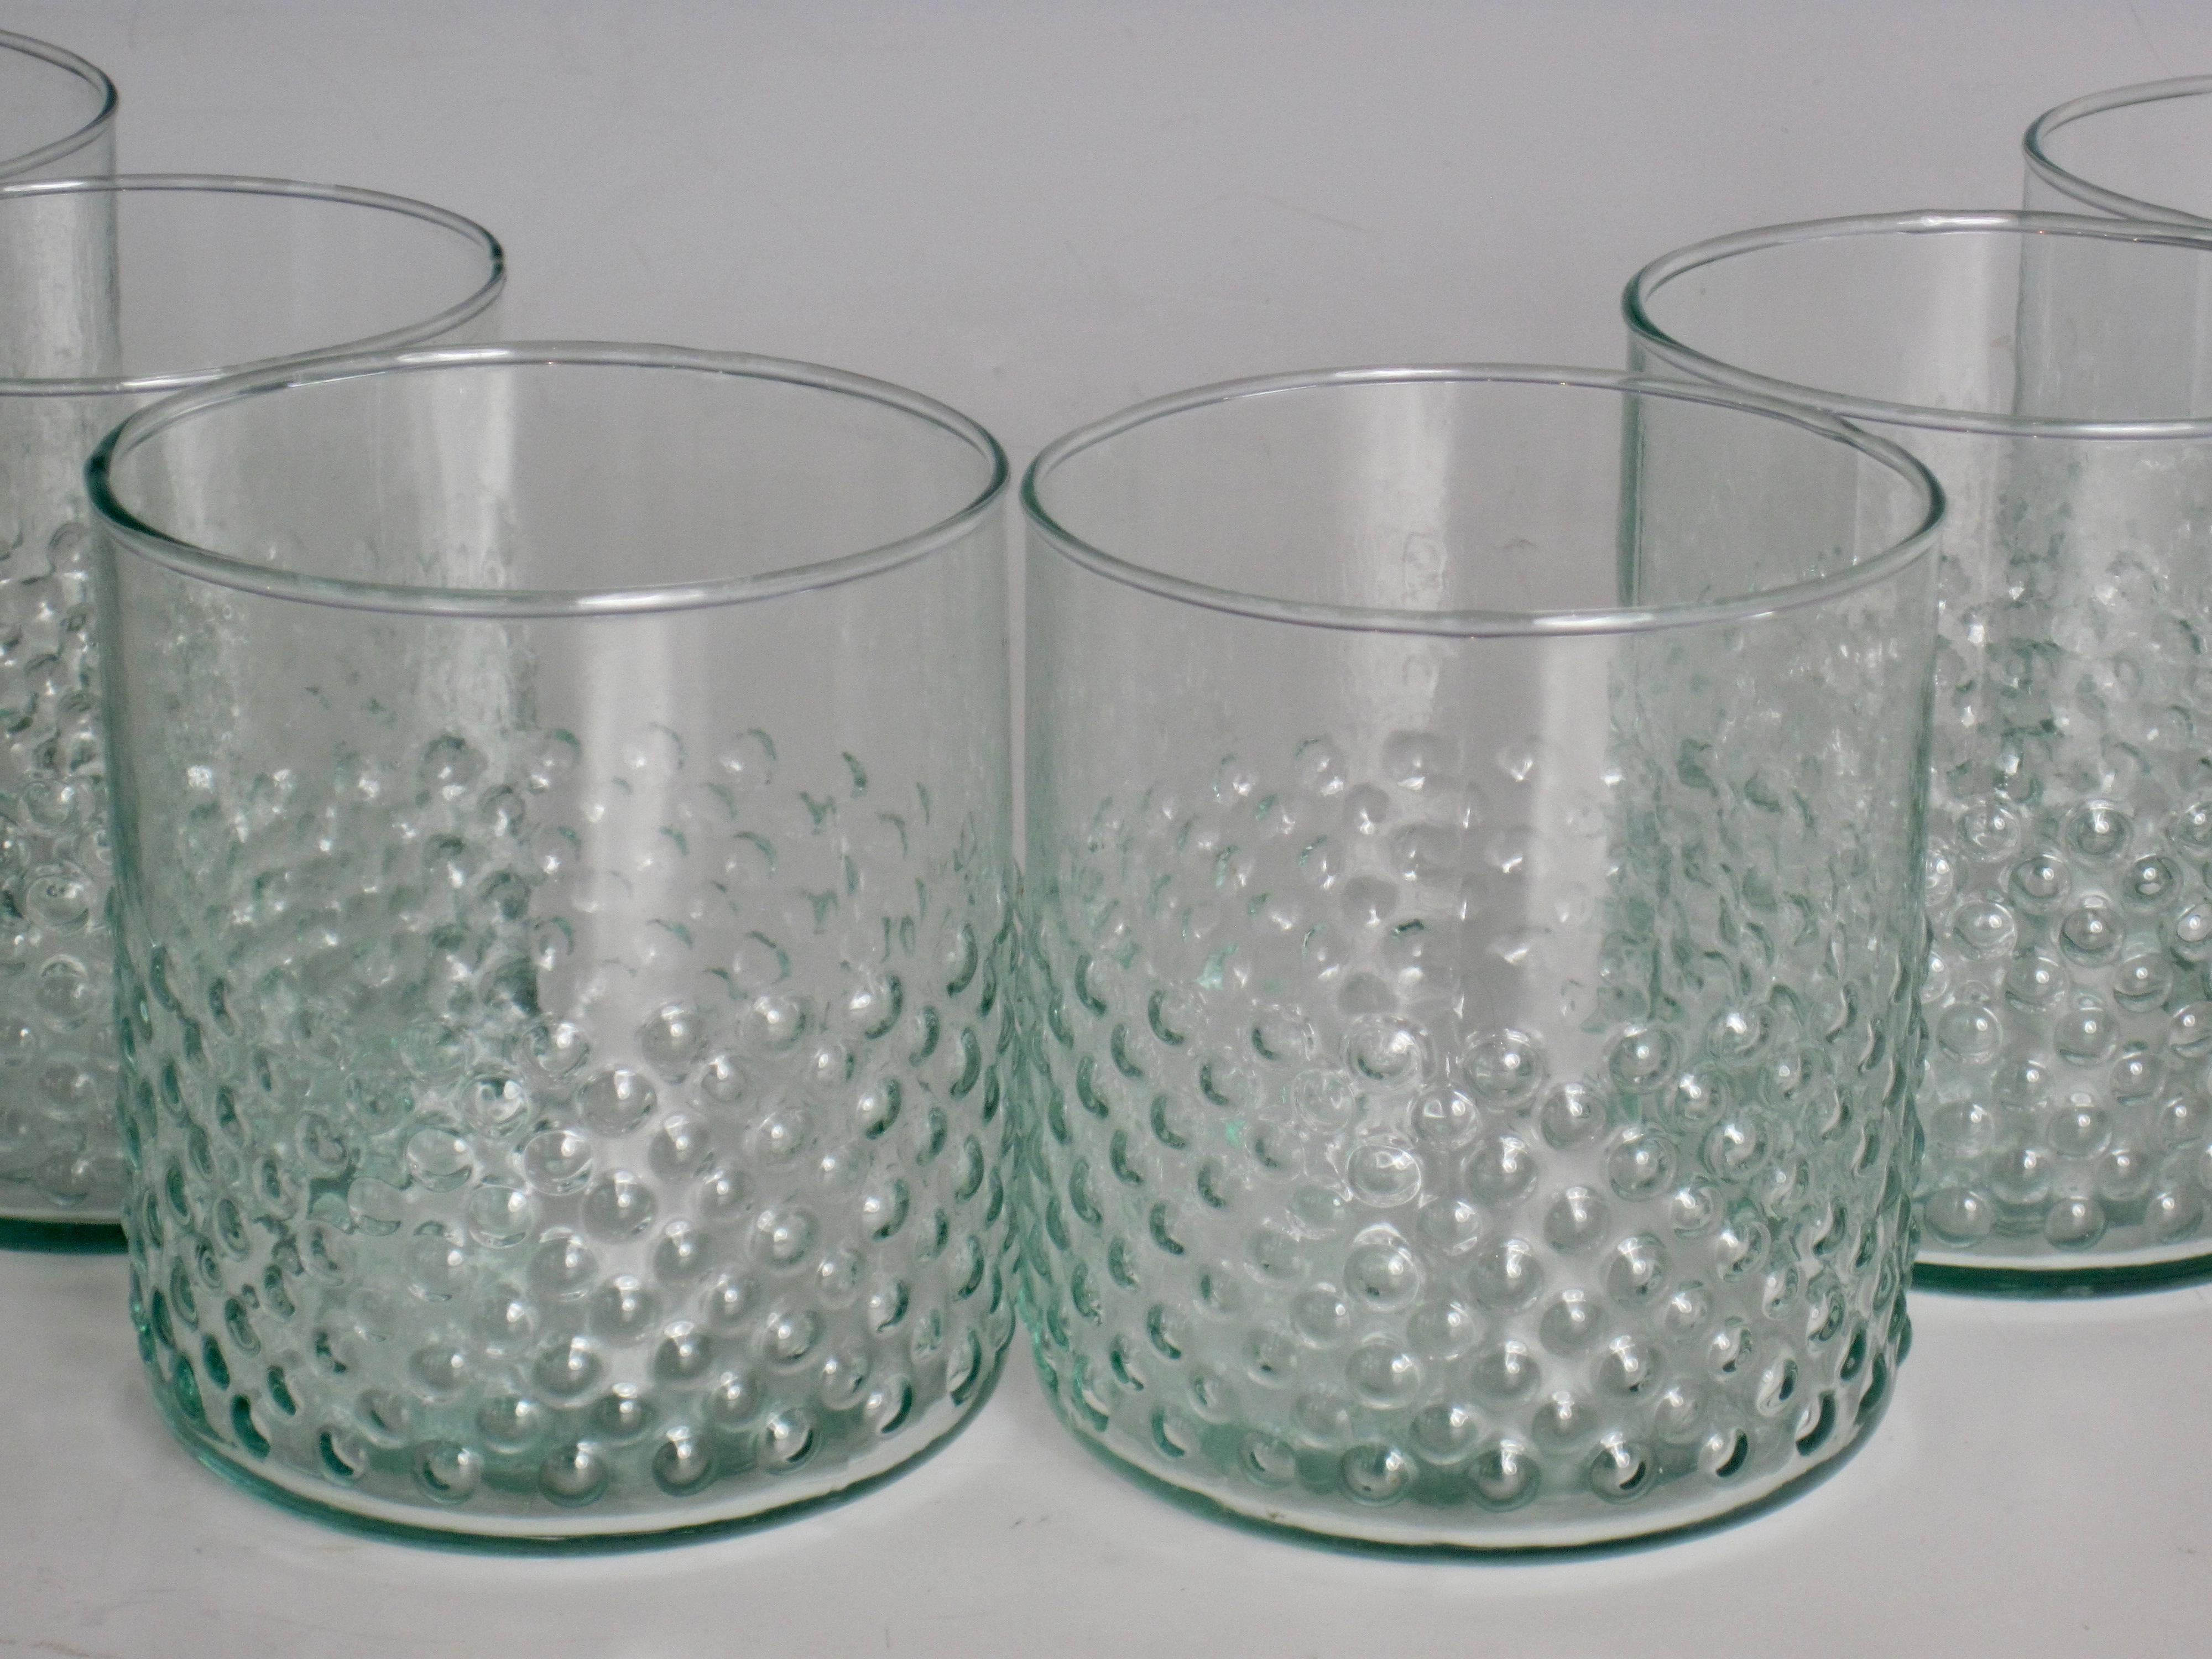 Set aus sechs gepunkteten Lowball-Gläsern aus recyceltem Glas mit klarer grüner Tönung. Das gepunktete Muster befindet sich auf der äußeren unteren Hälfte des Glases und liegt gut in der Hand.
Aufgrund der Natur von recyceltem Glas können